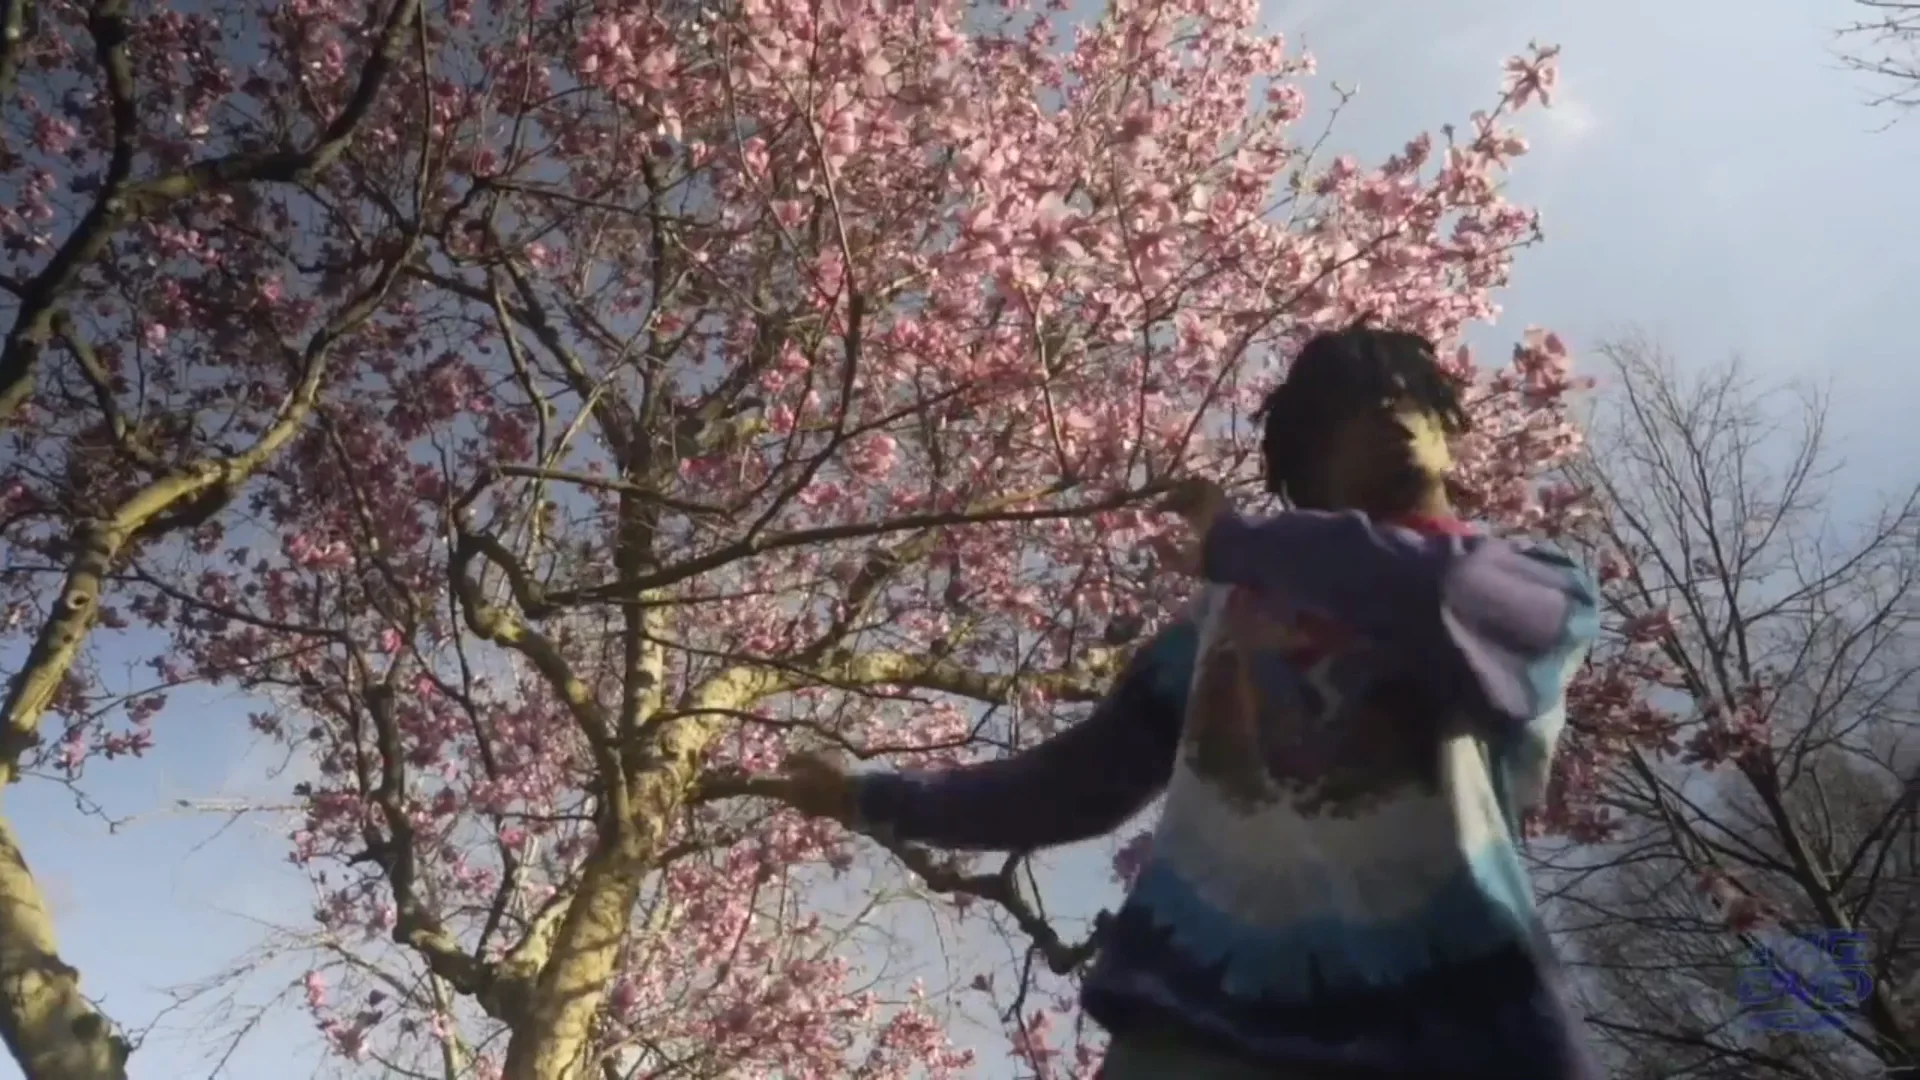 Playboi Carti Rocks a Sidewalk in the 'Lookin” Video with Lil Uzi Vert